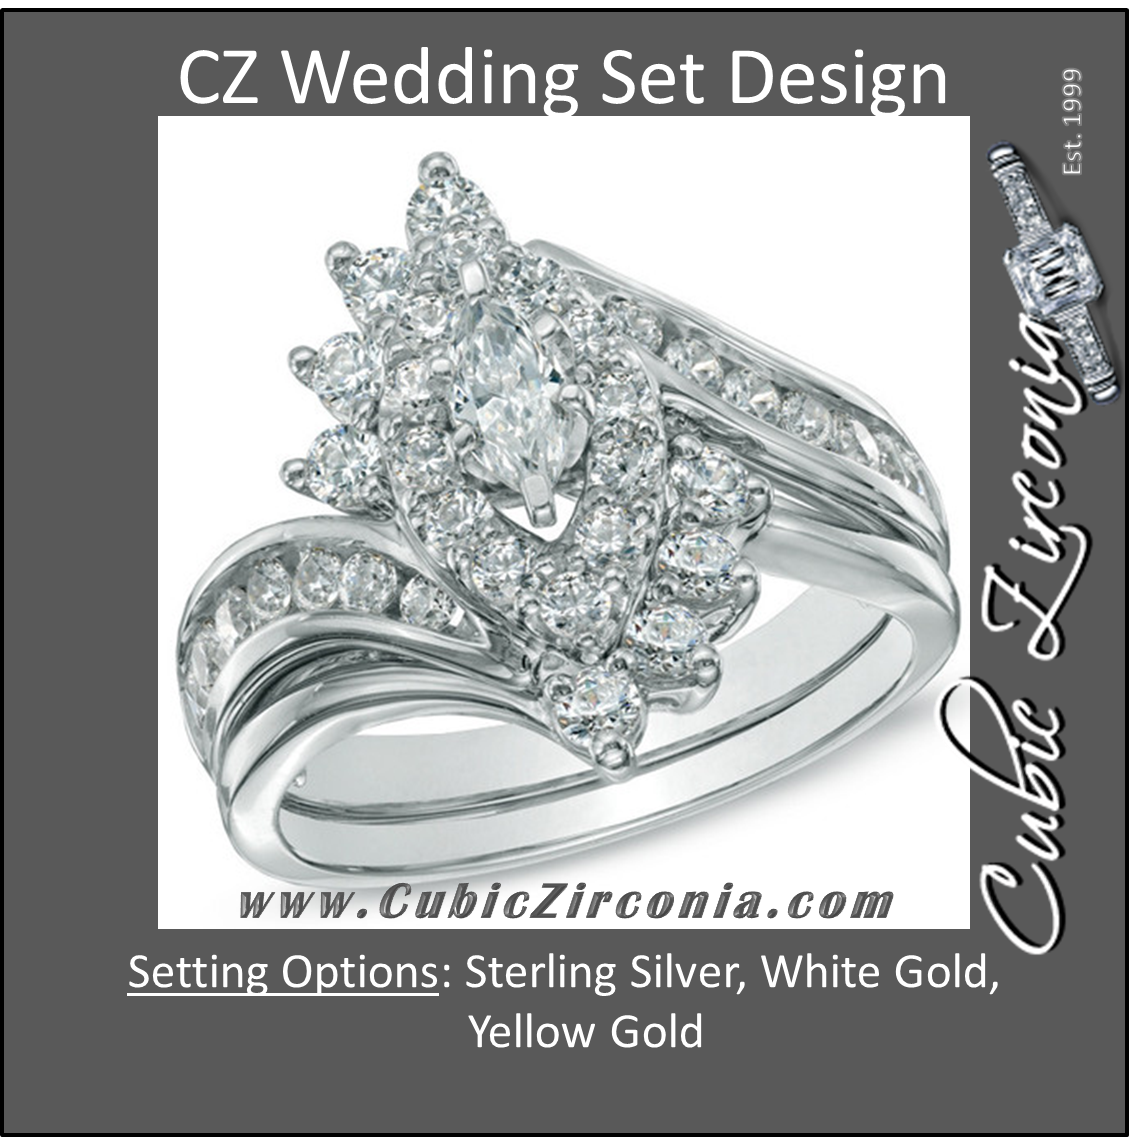 CZ Wedding Set feat Amanda Cluster Engagement 3.5 TCW Marquise